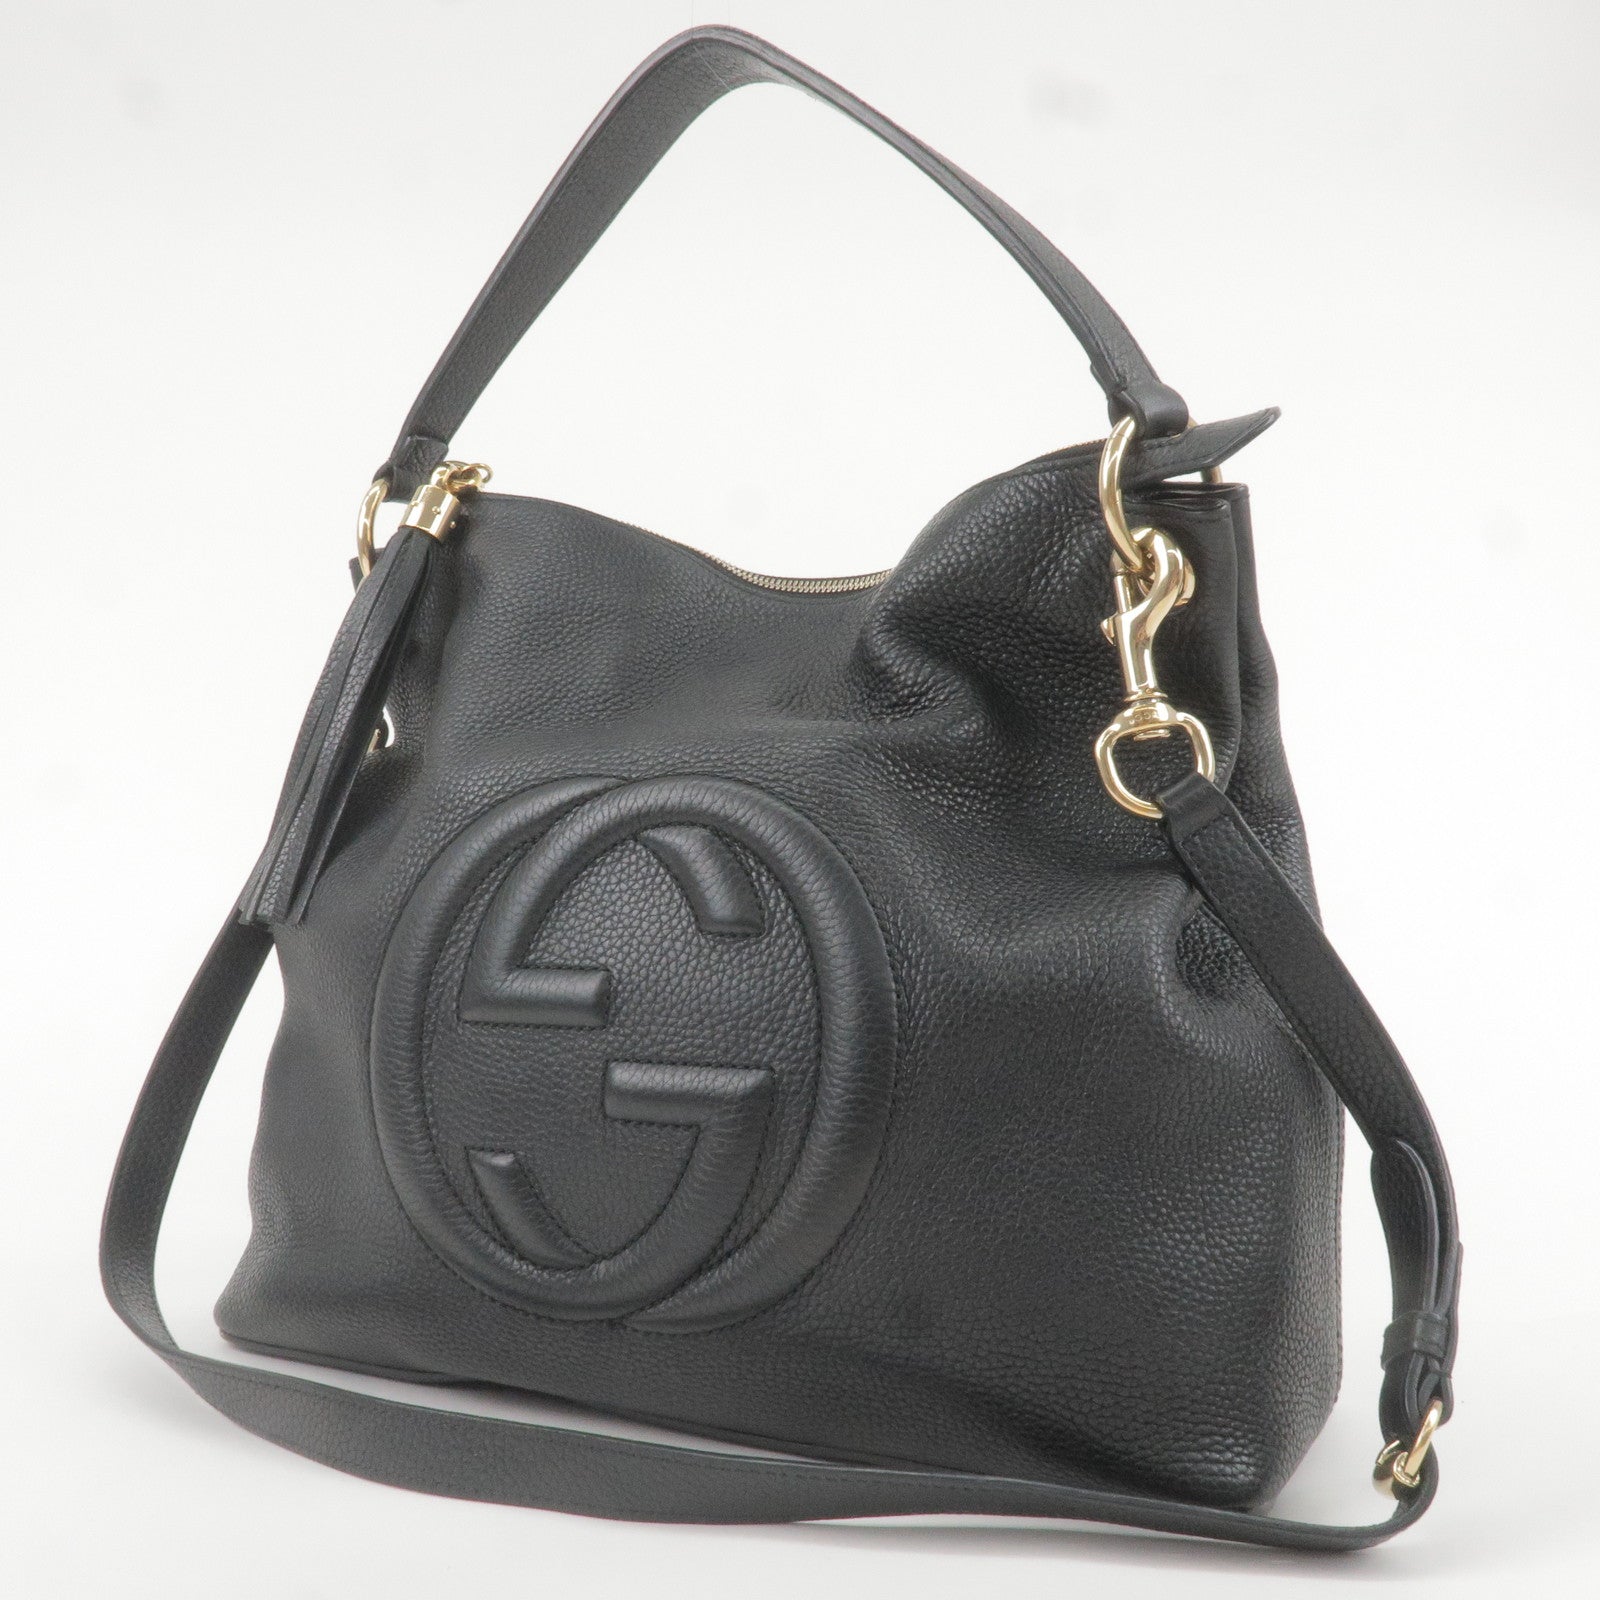 GUCCI-SOHO-Leather-Shoulder-Bag-2Way-Bag-Black-536194